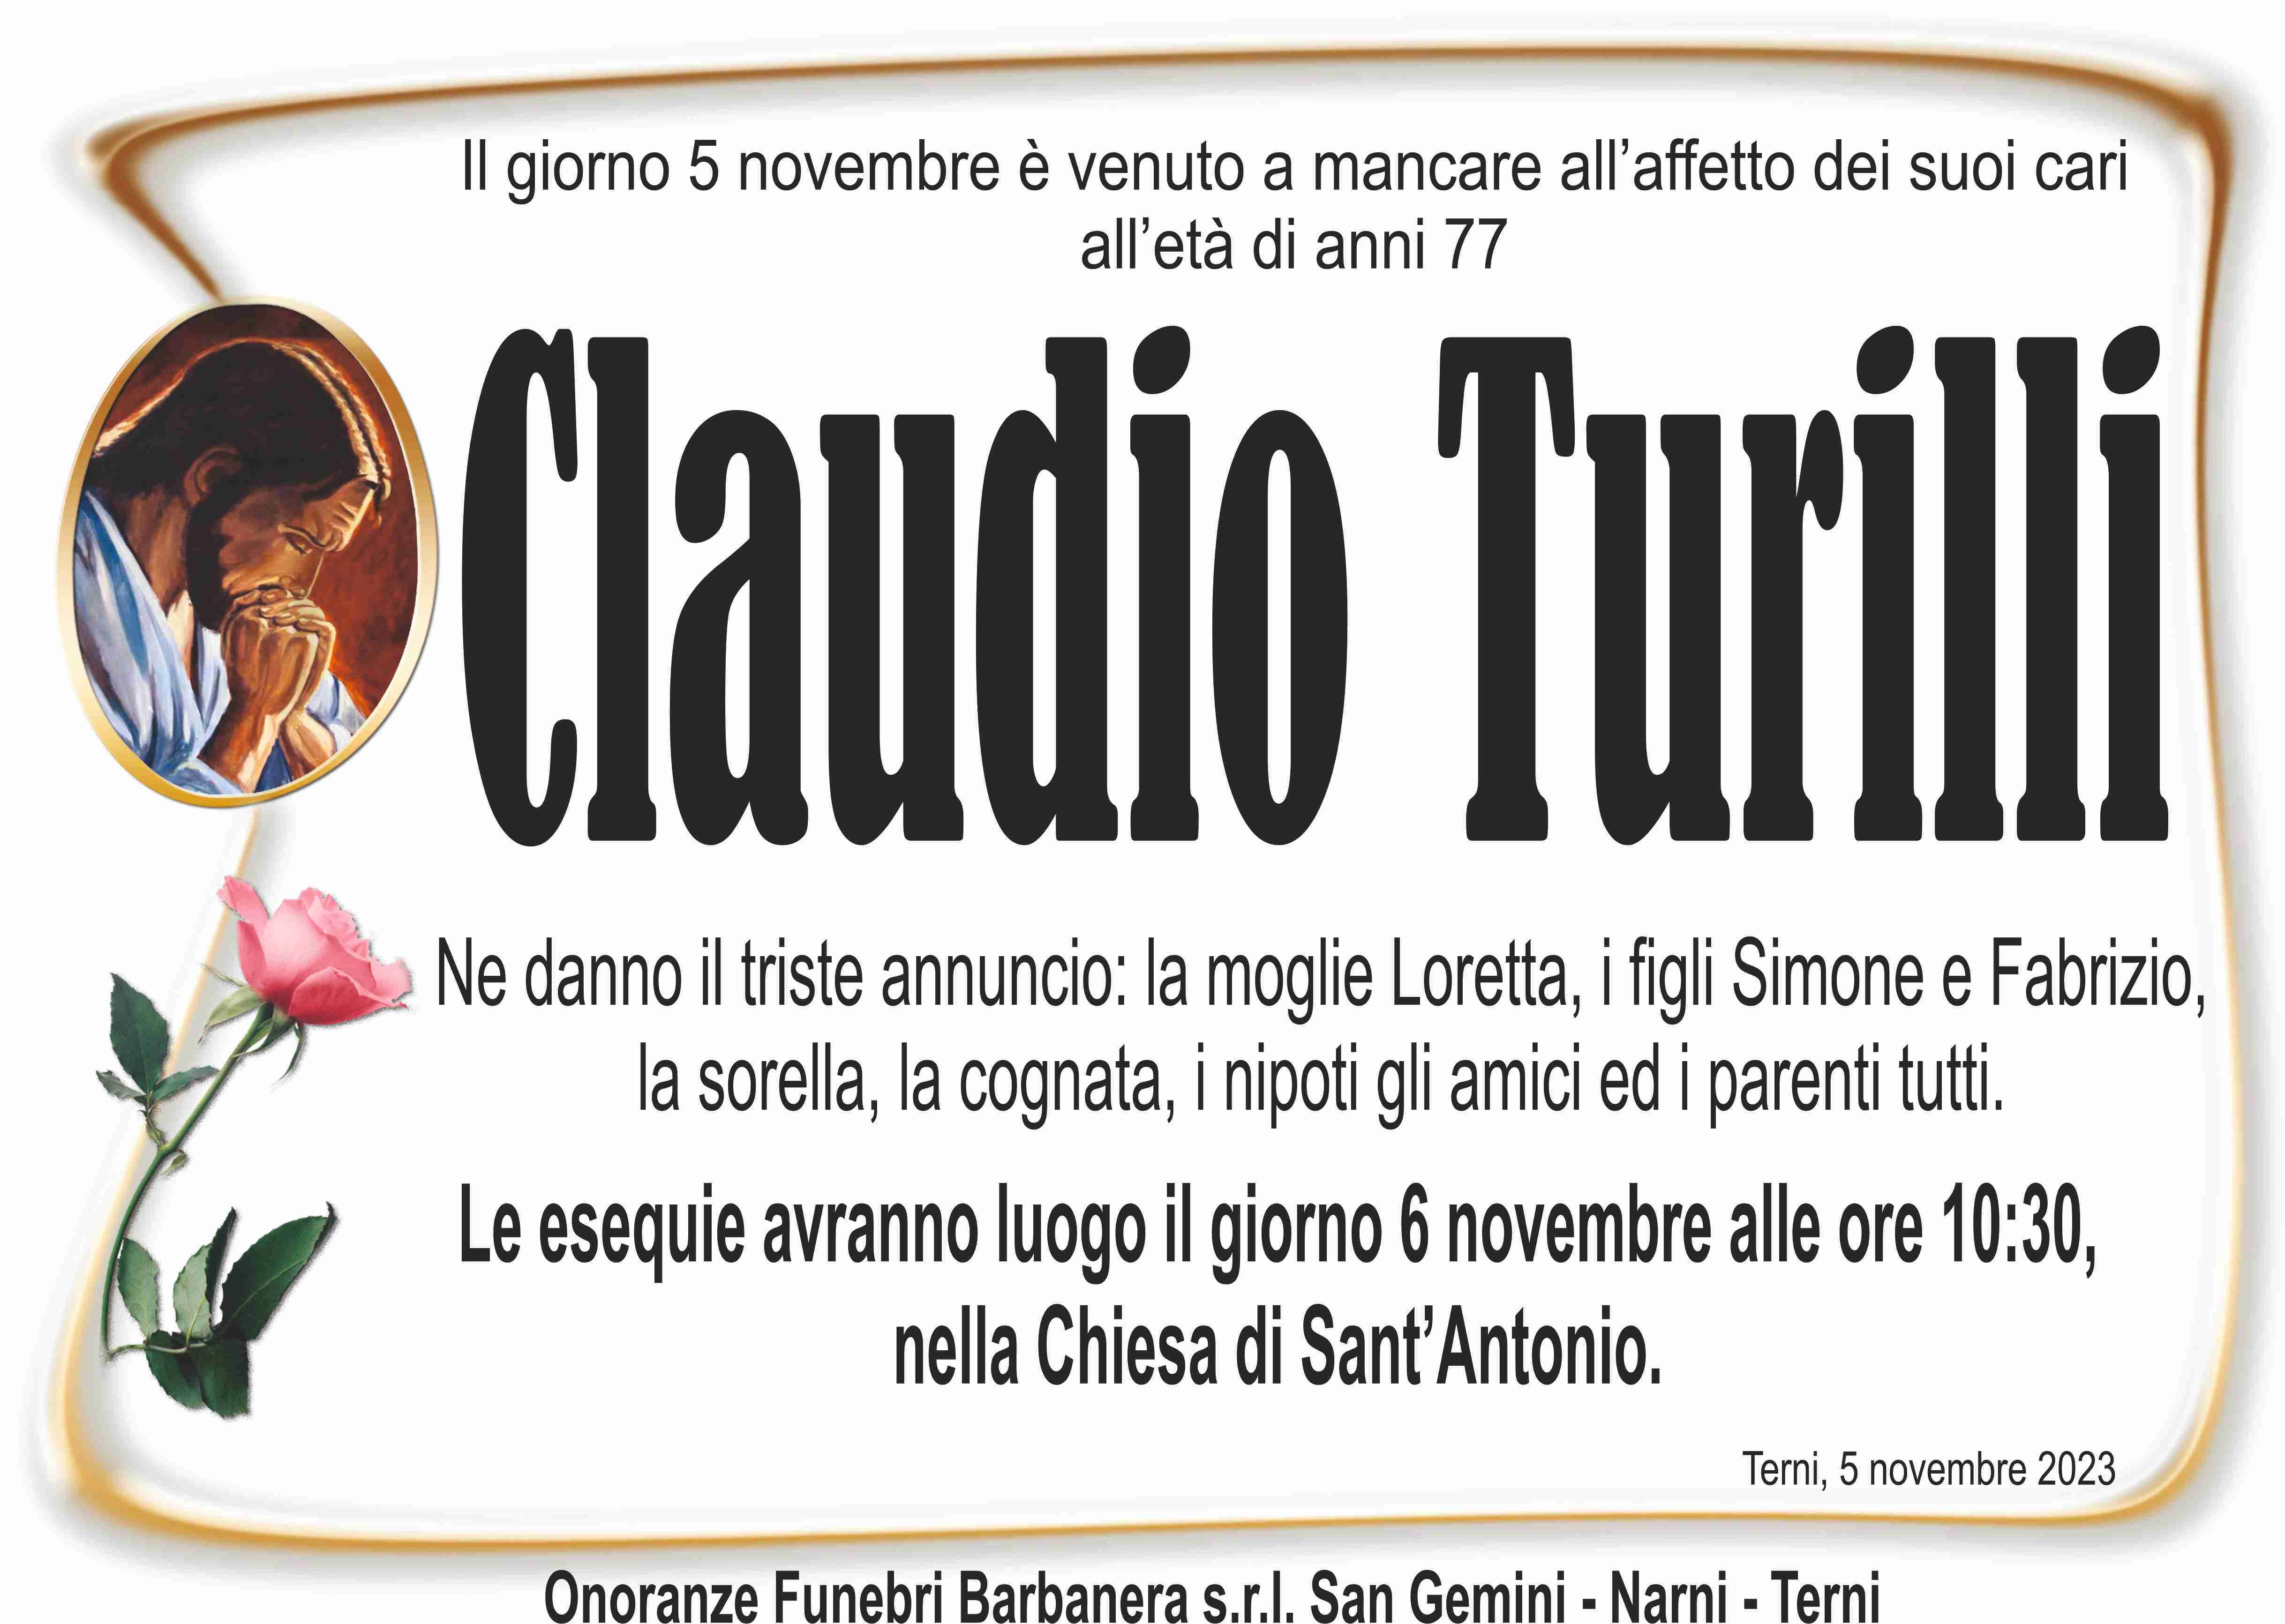 Turilli Claudio